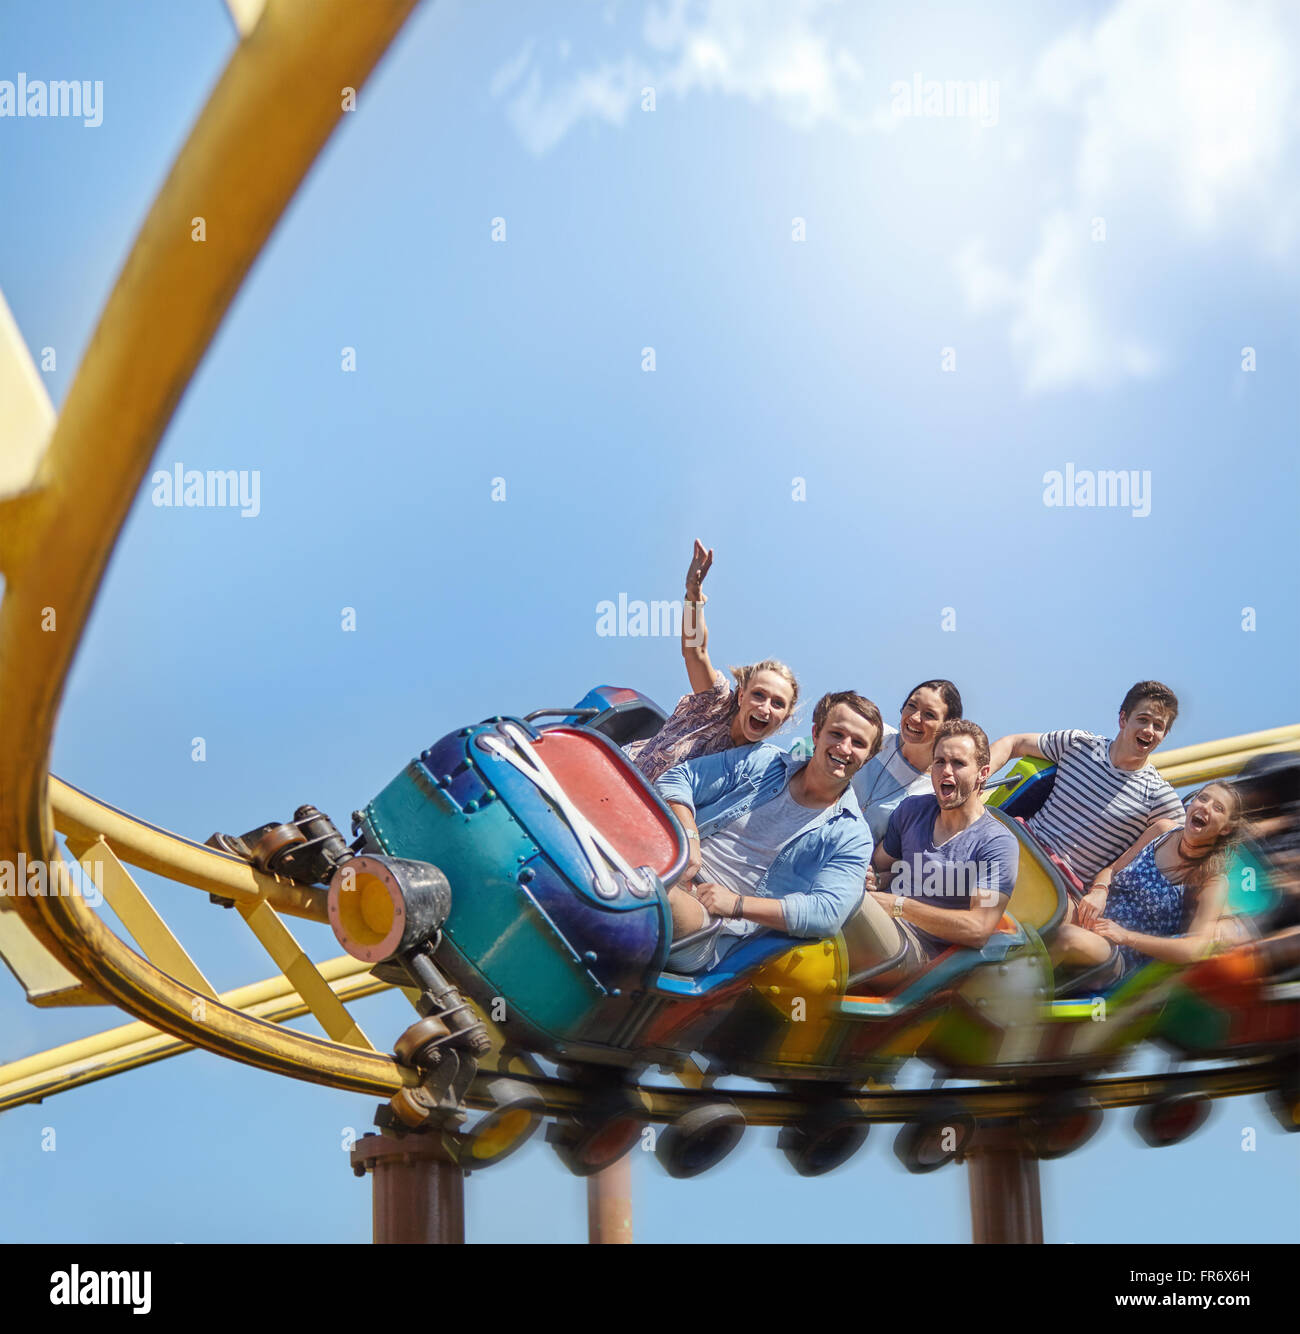 Encourager les amis équitation roller coaster at amusement park Banque D'Images